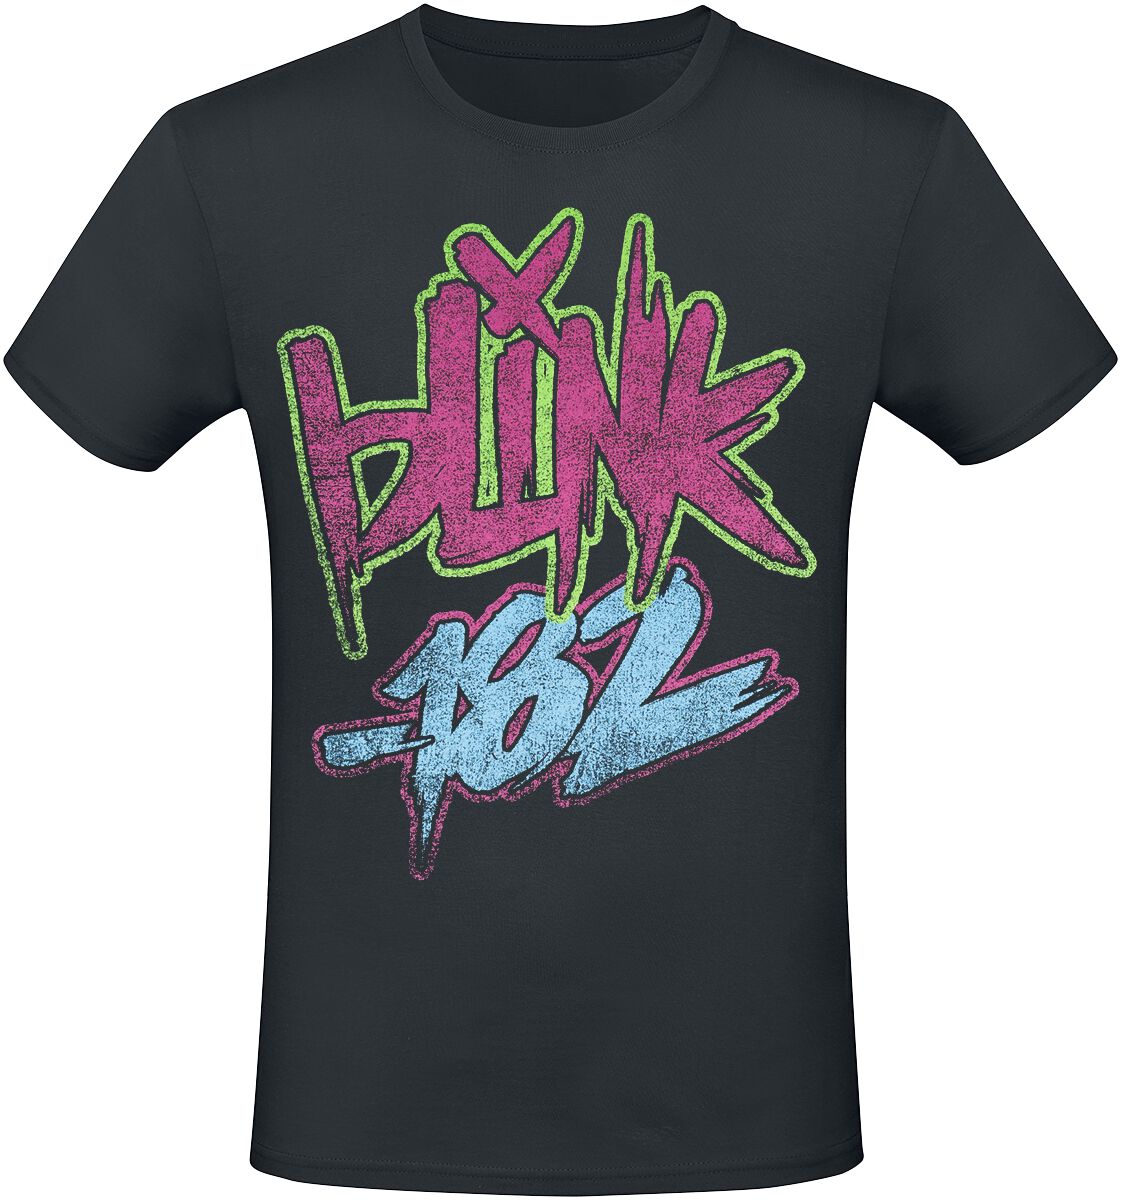 Blink-182 T-Shirt - Text - S bis 3XL - für Männer - Größe M - schwarz  - Lizenziertes Merchandise!